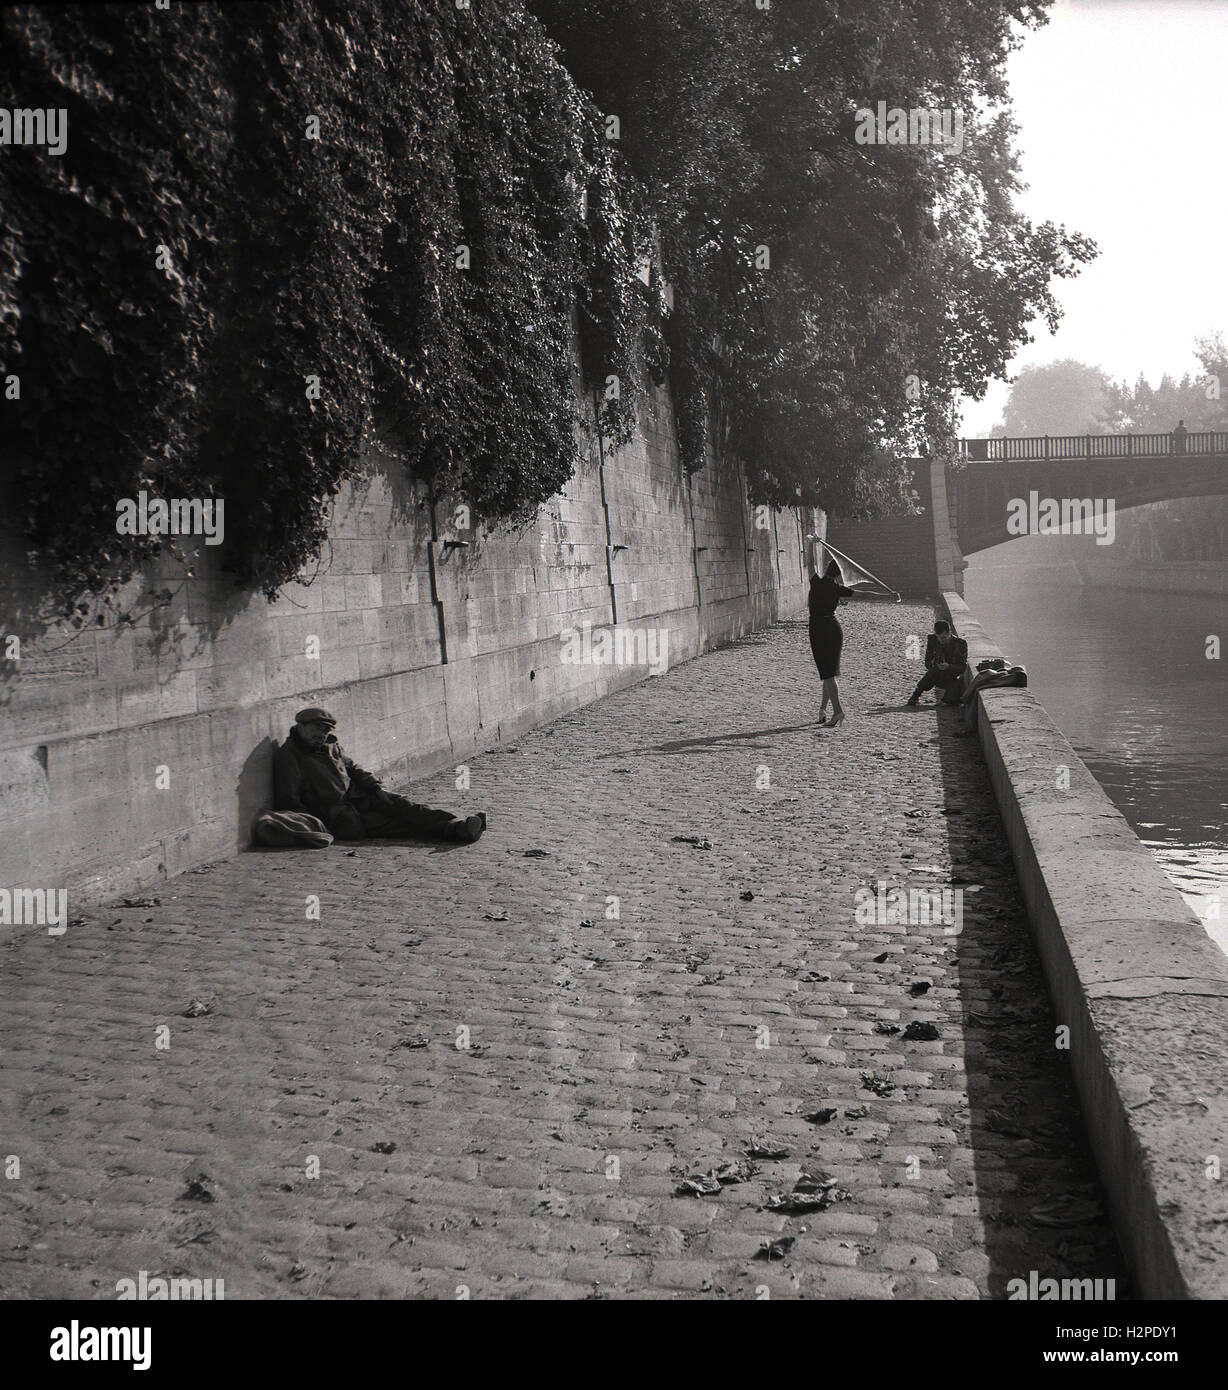 1950, una sesión de fotos de moda en las orillas del río Sena, París,  Francia, el fotógrafo tomando fotos de una mujer en tacones y vestido, con  un vagabundo sentado en el